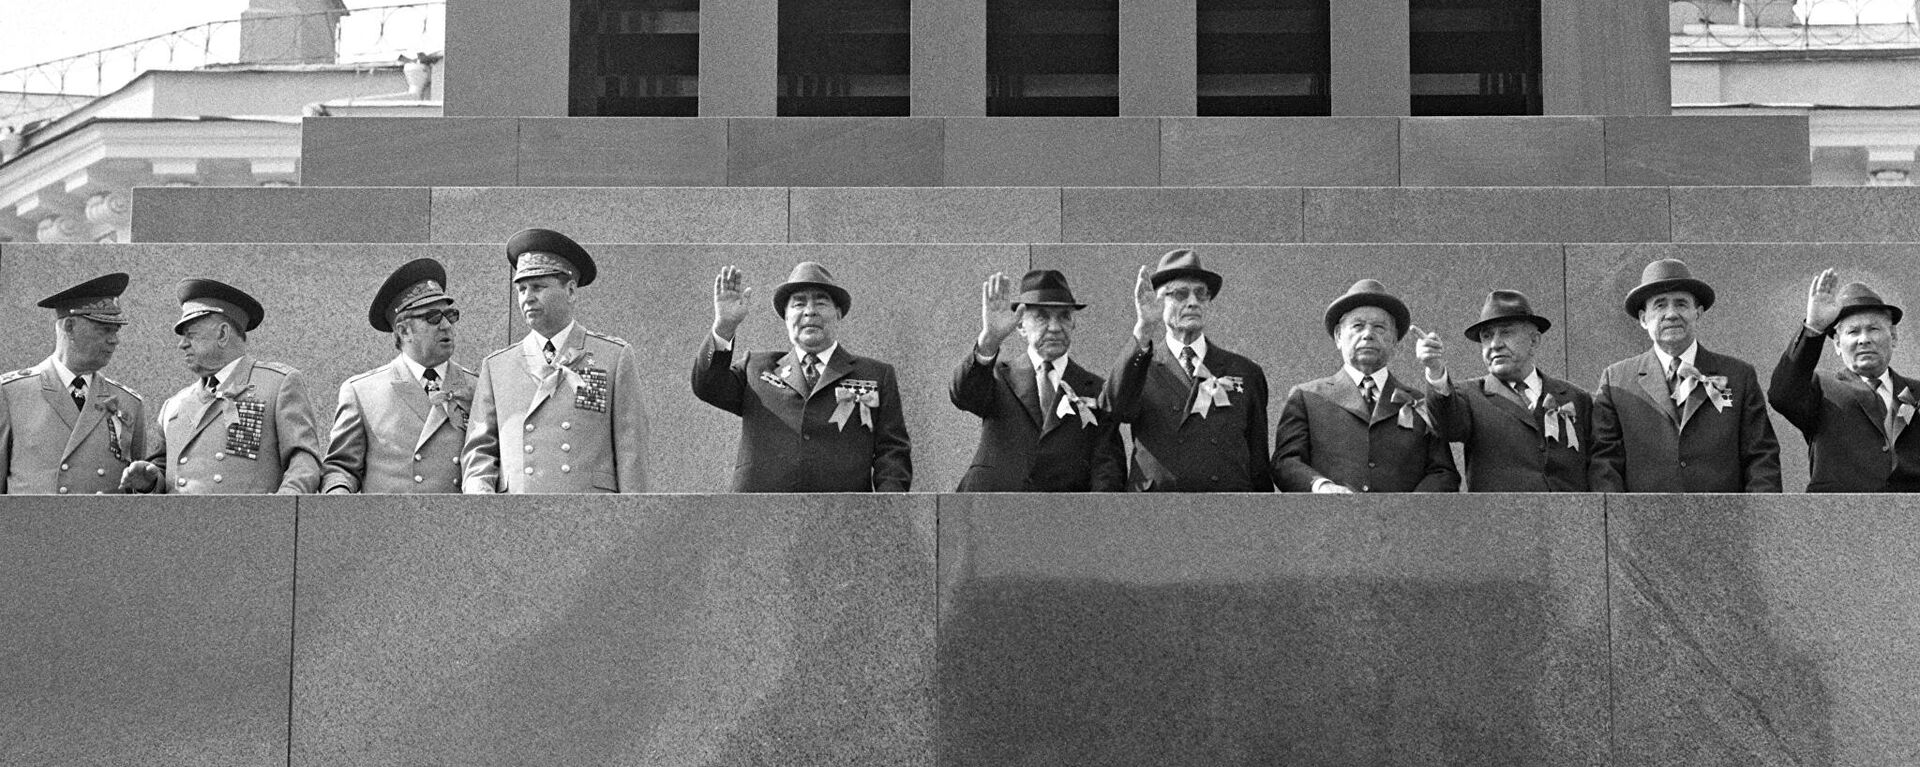 Los líderes del gobierno de URSS en la Plaza Roja de Moscú. - Sputnik Mundo, 1920, 05.06.2021